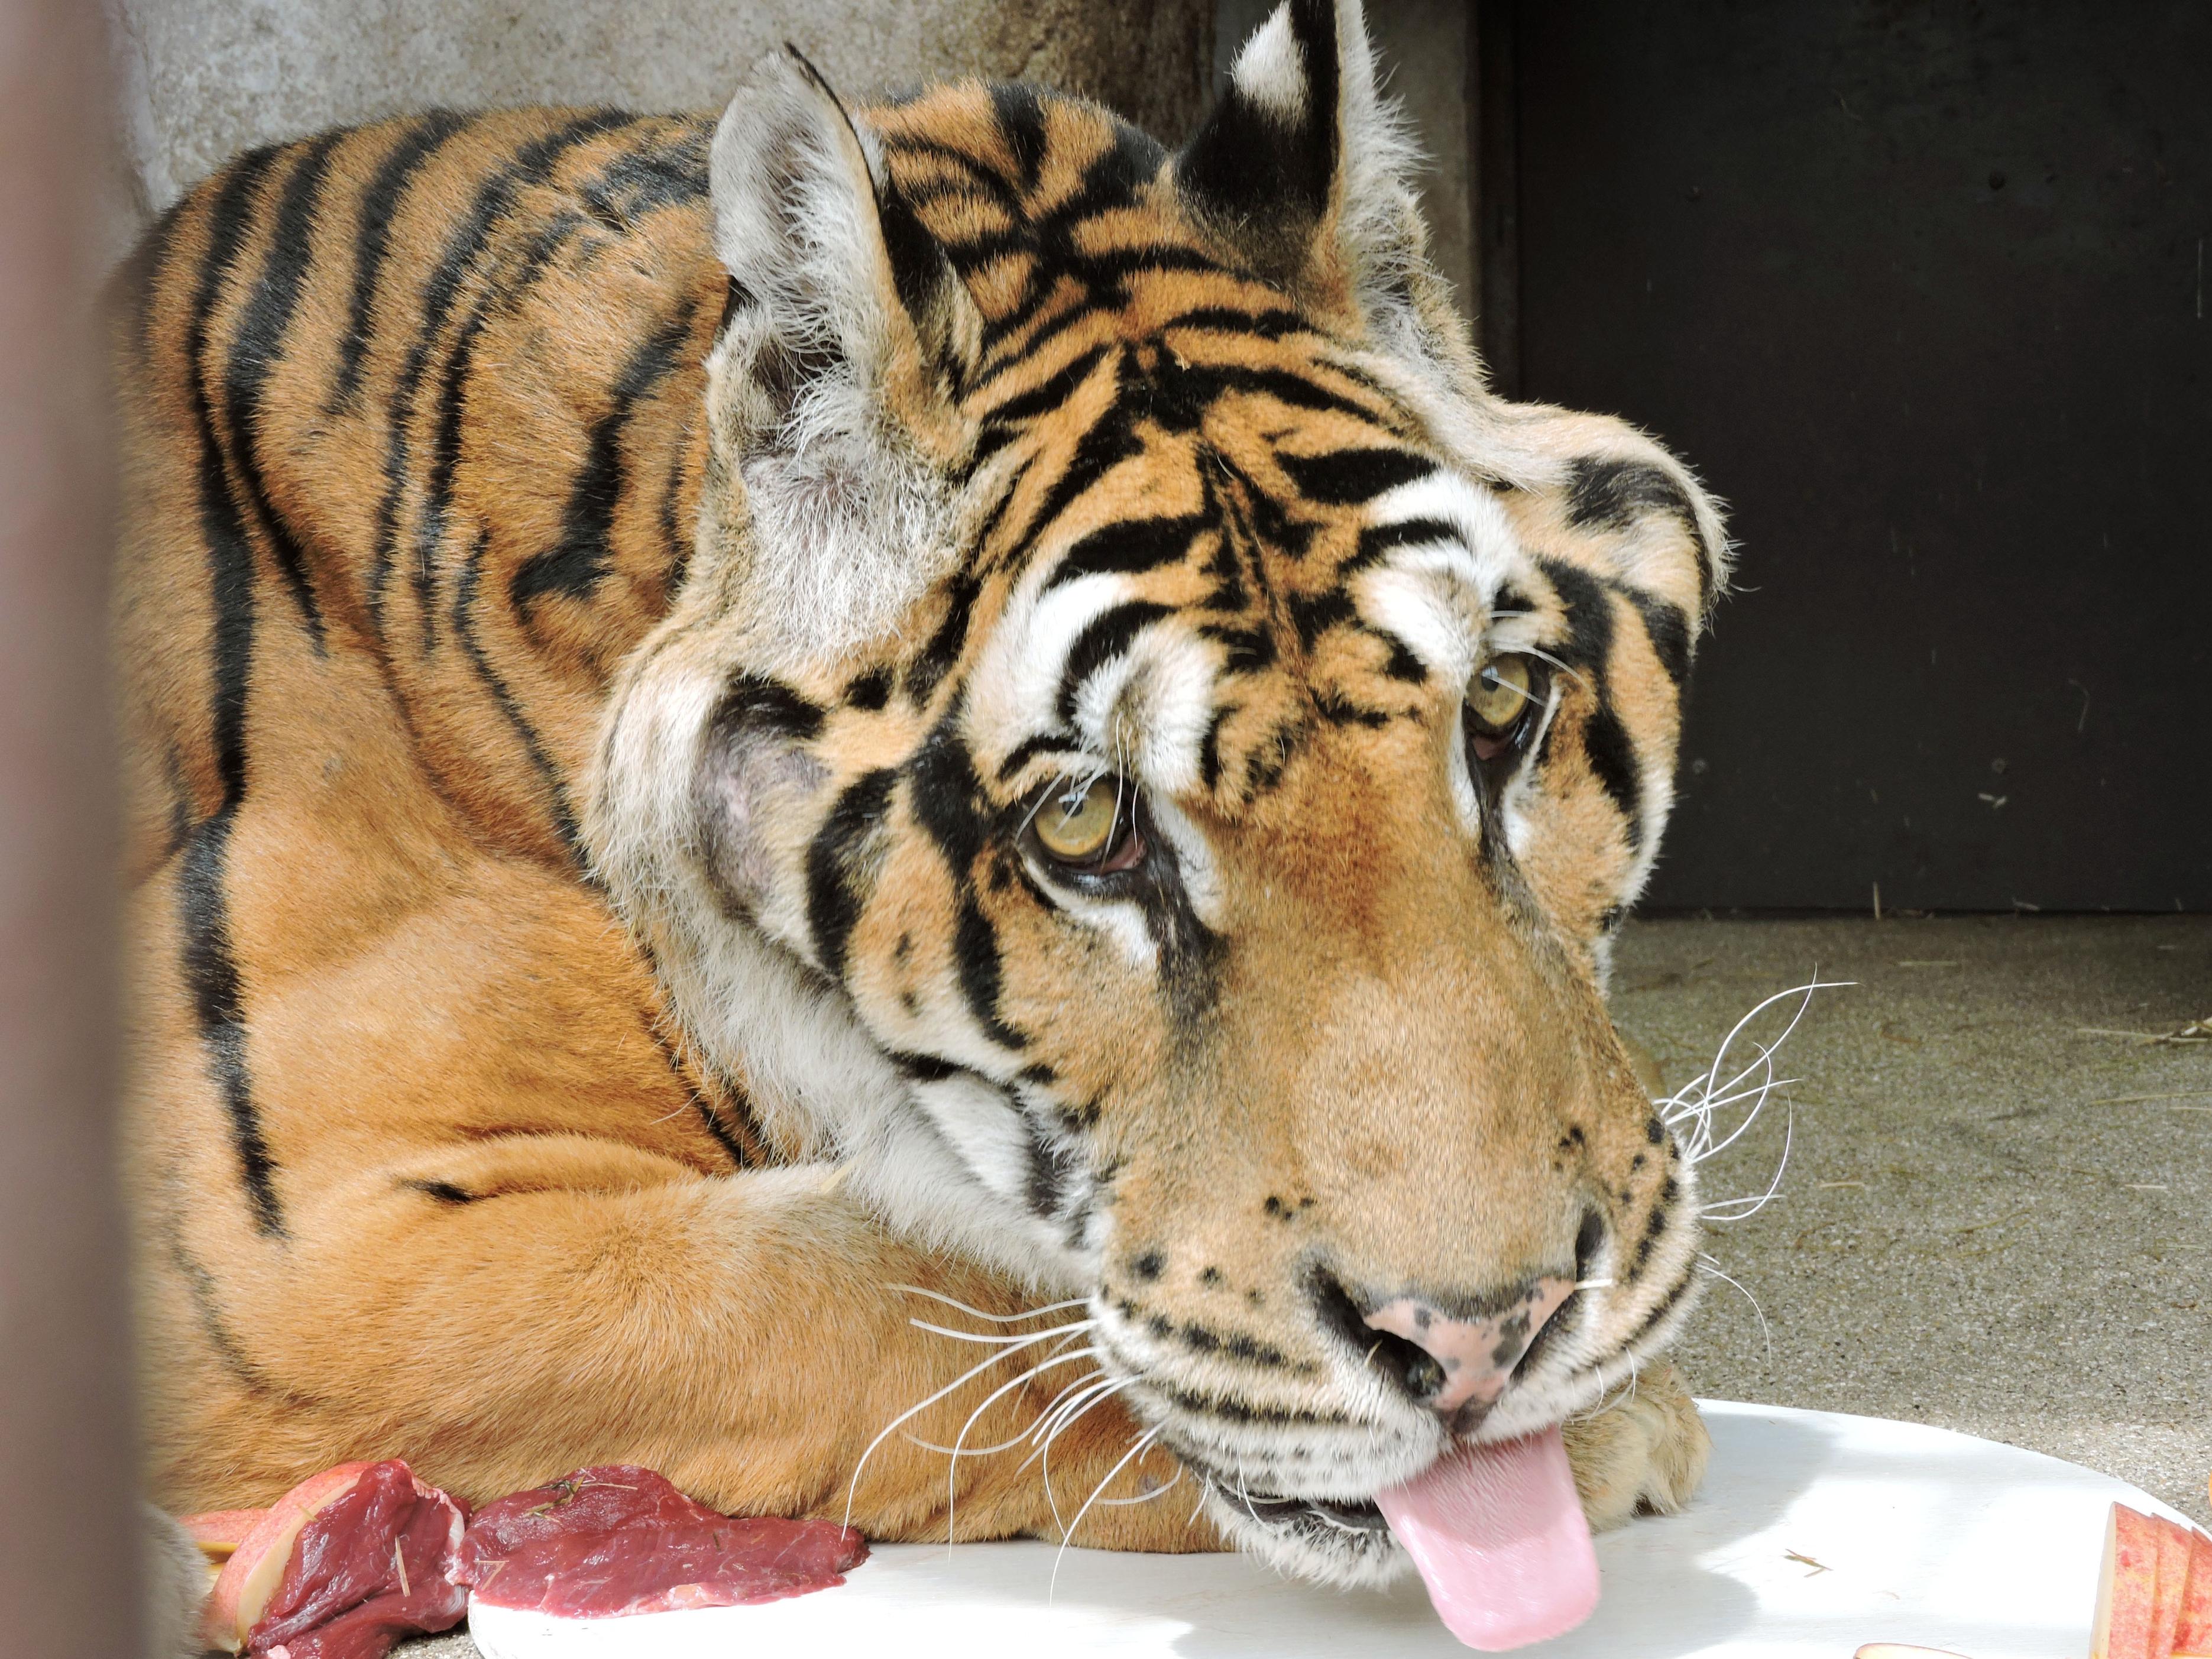 Bengal tiger in Japan dies